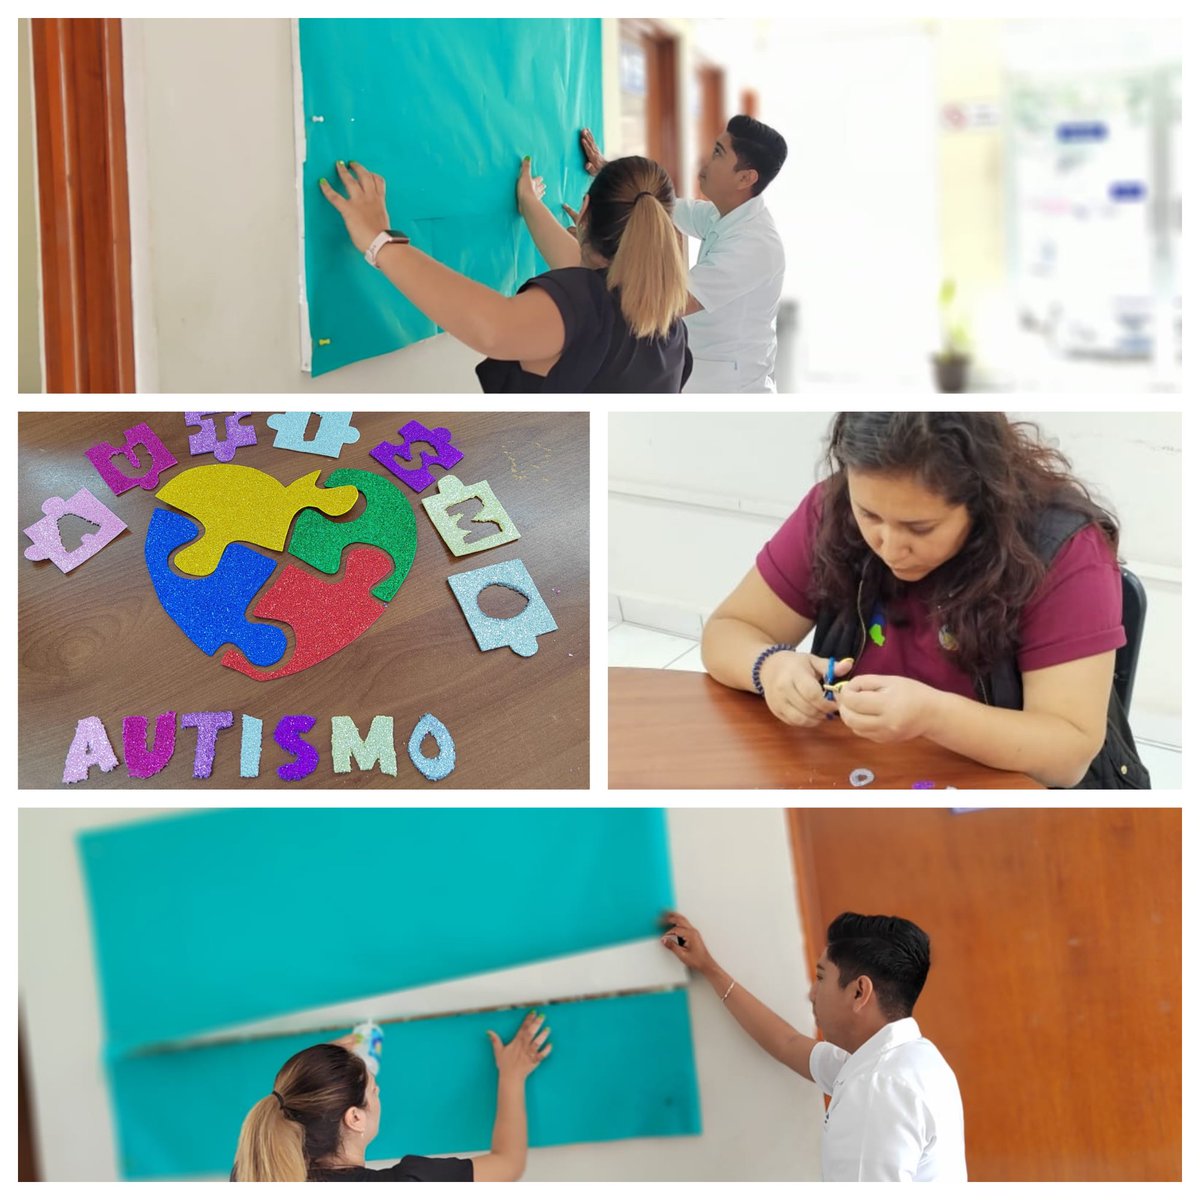 Elaboración de periódico mural en conmemoración del “Día Mundial de la Concientización sobre el AUTISMO”
#CEPTCA #EstamosTransformando #TransformandoJuntos #Sinaloa #UNEMECAPA #Adicciones #LineadelaVida #Prevención